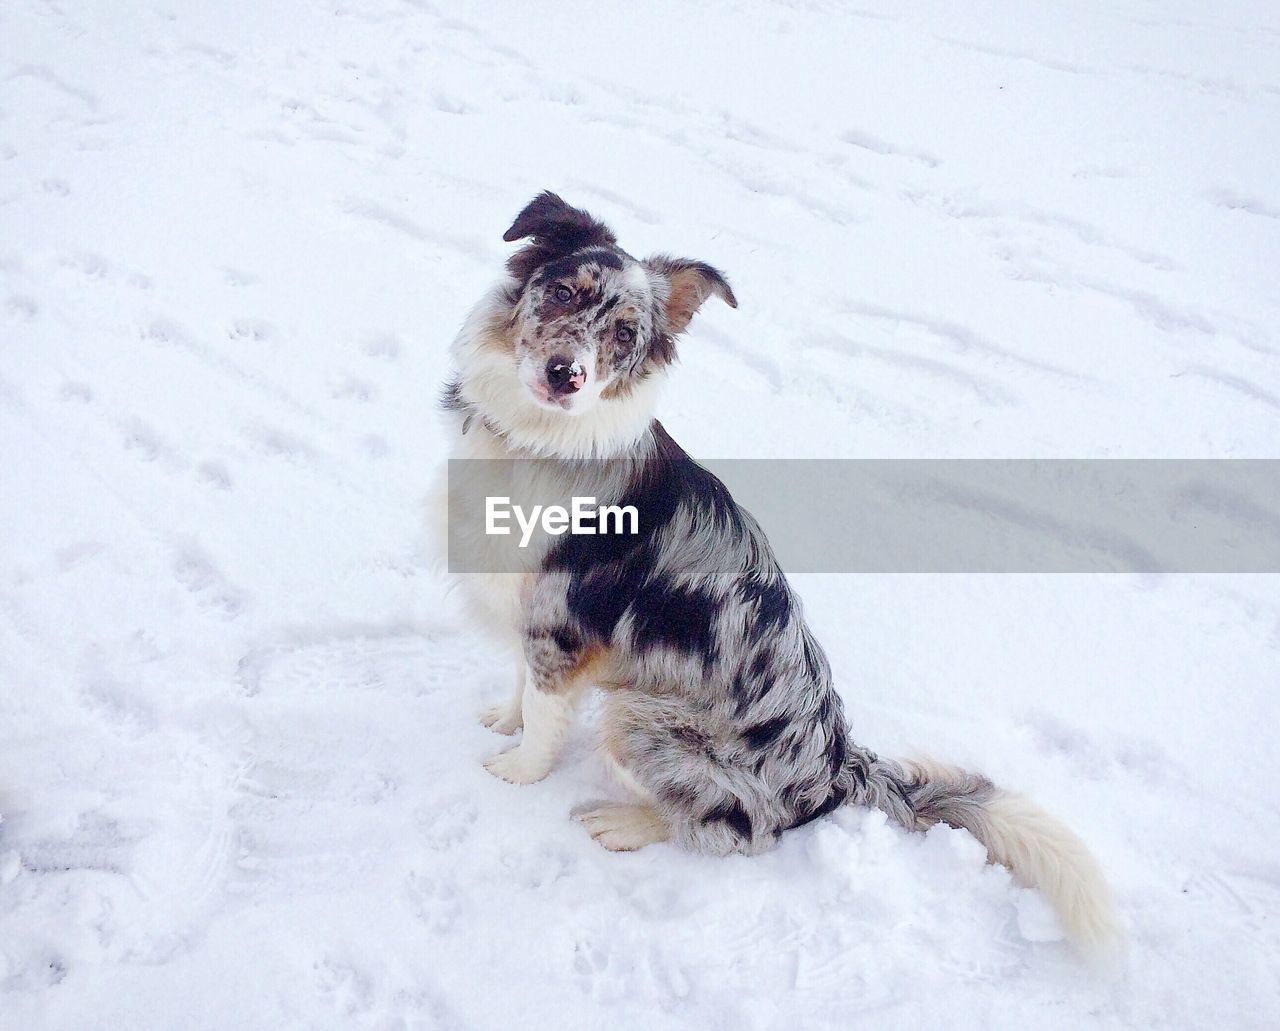 High angle view of dog on snow